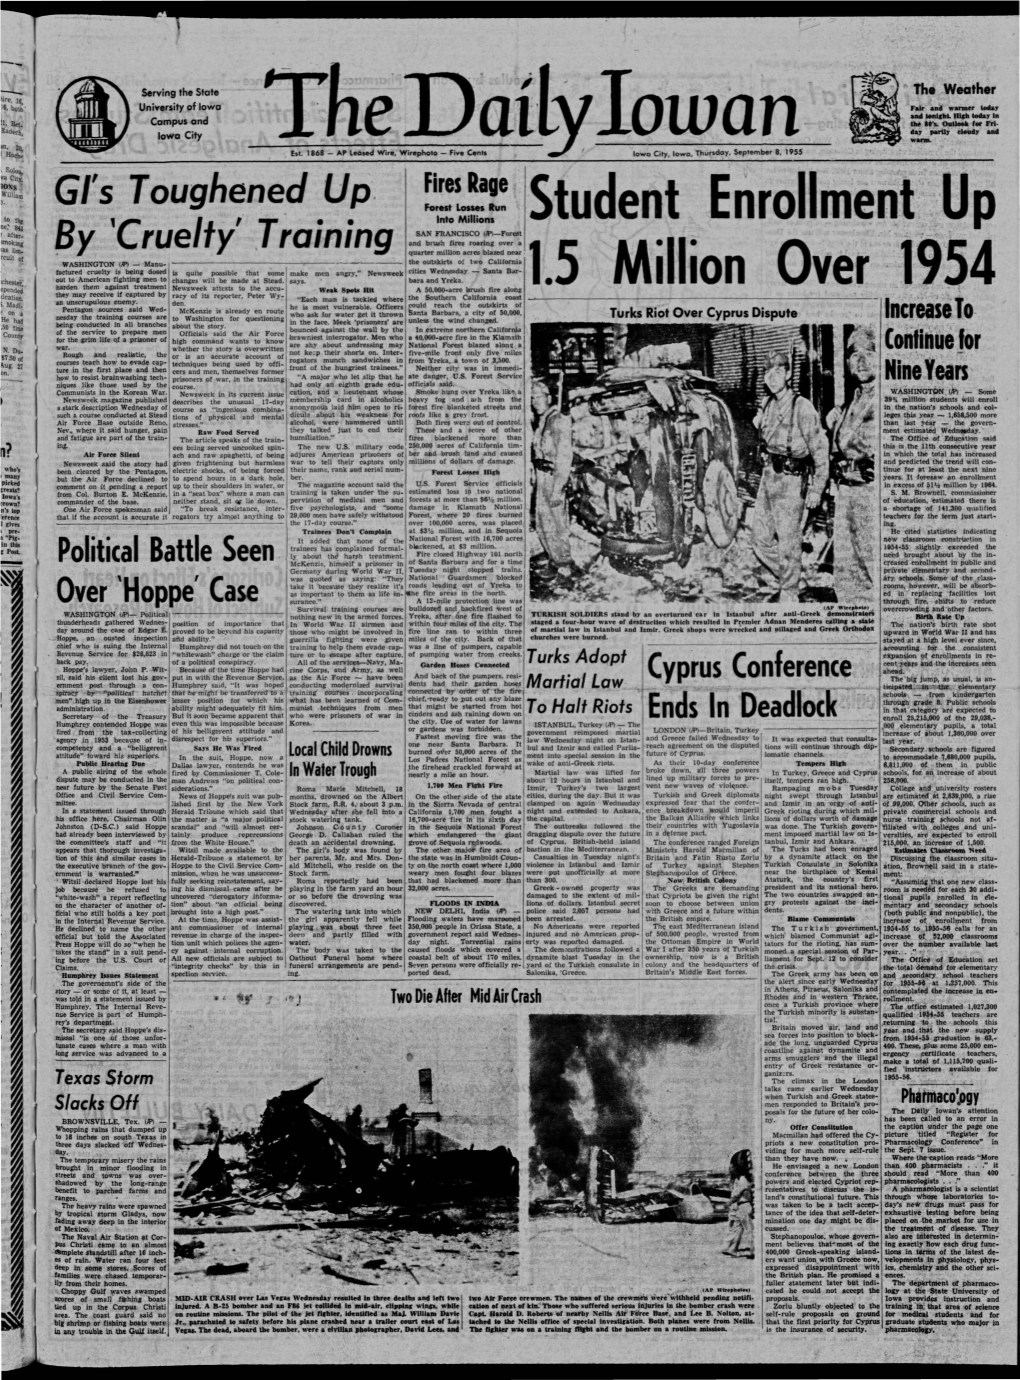 Daily Iowan (Iowa City, Iowa), 1955-09-08